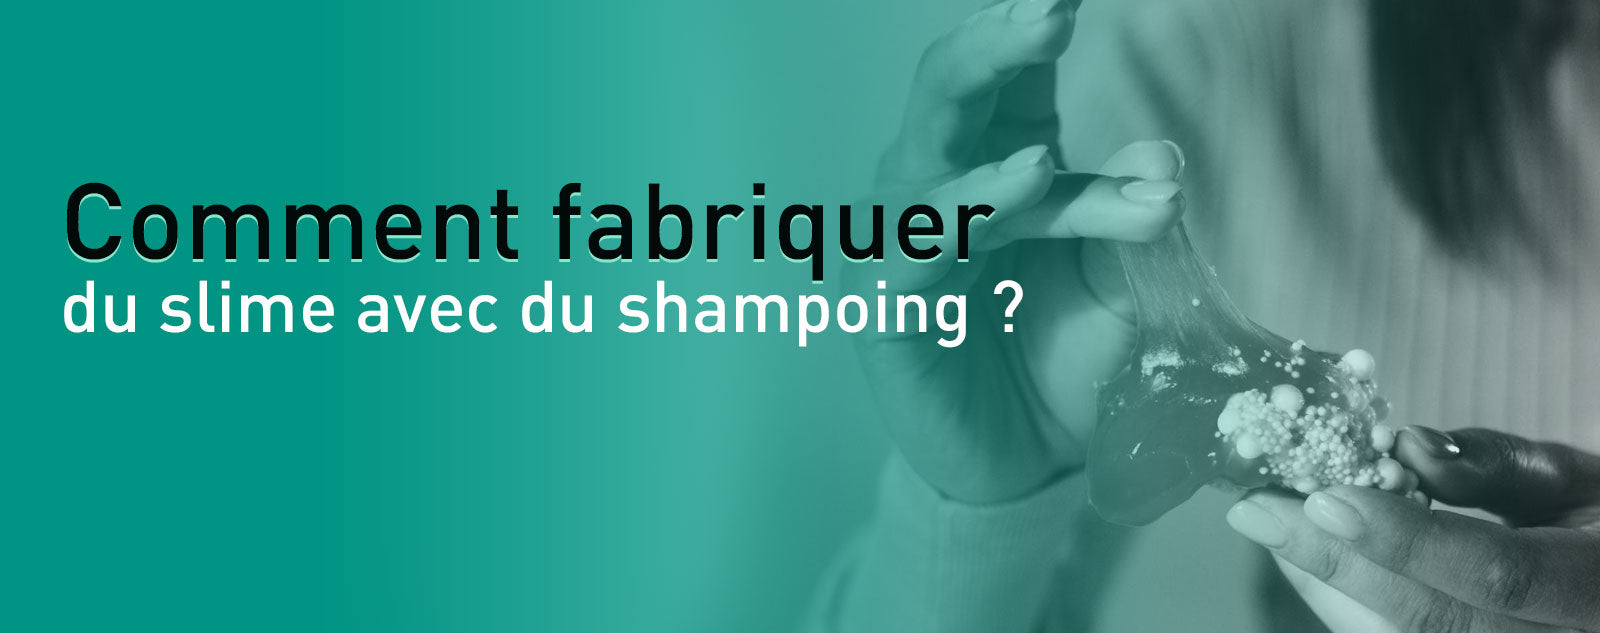 Comment fabriquer du slime avec du shampoing ?